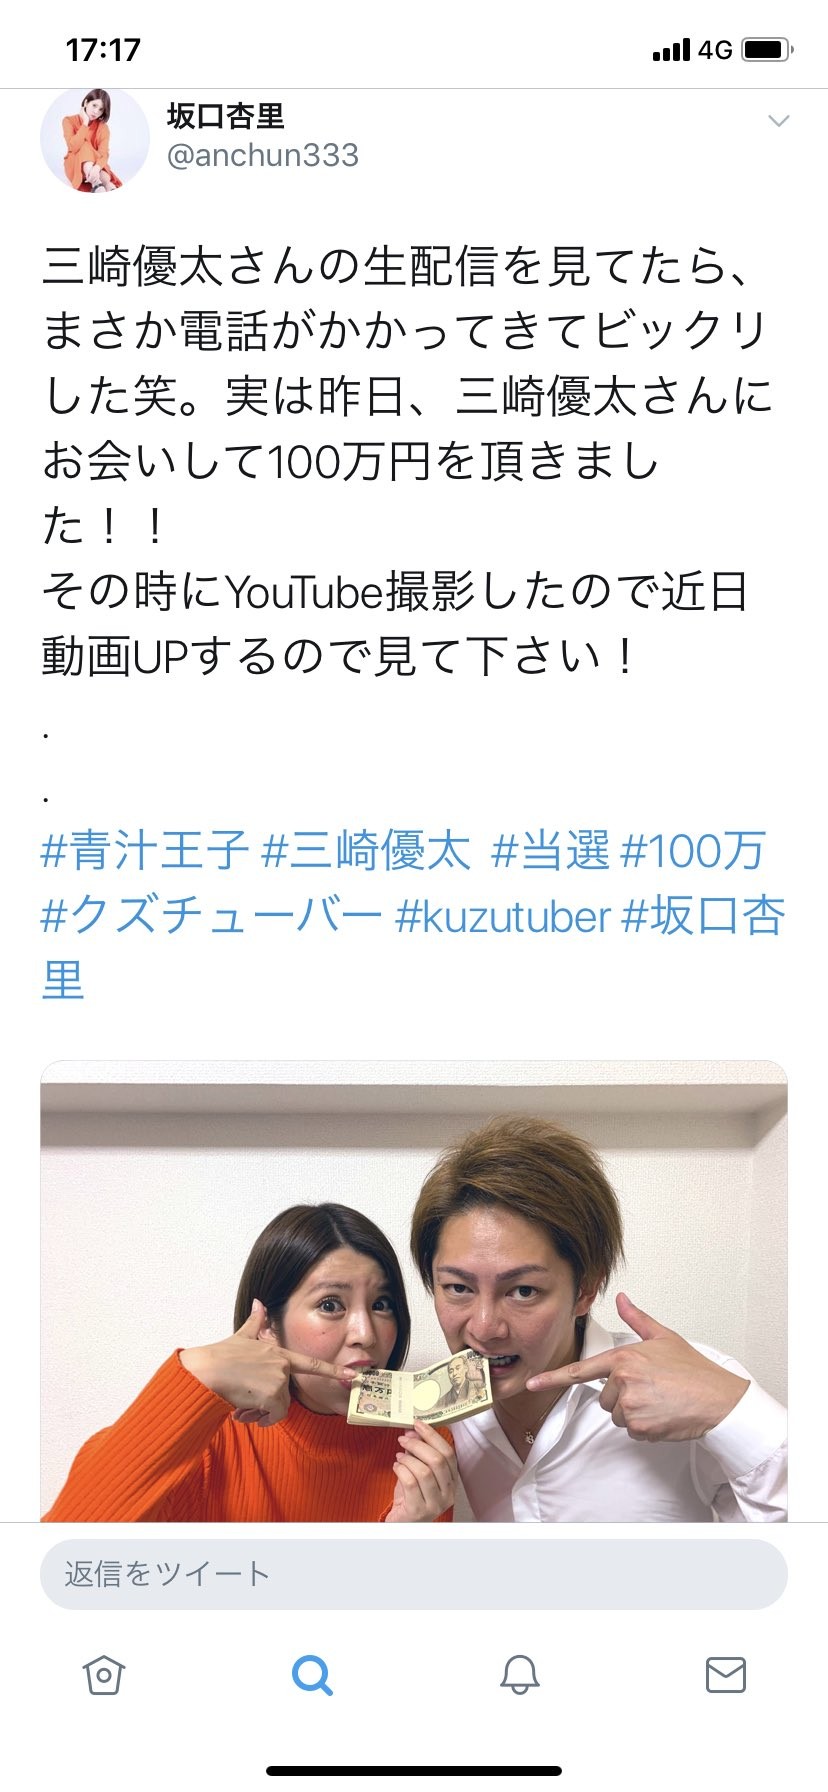 [Sad news] Anri Sakaguchi wins 1 million yen campaign for Aojiru Prince